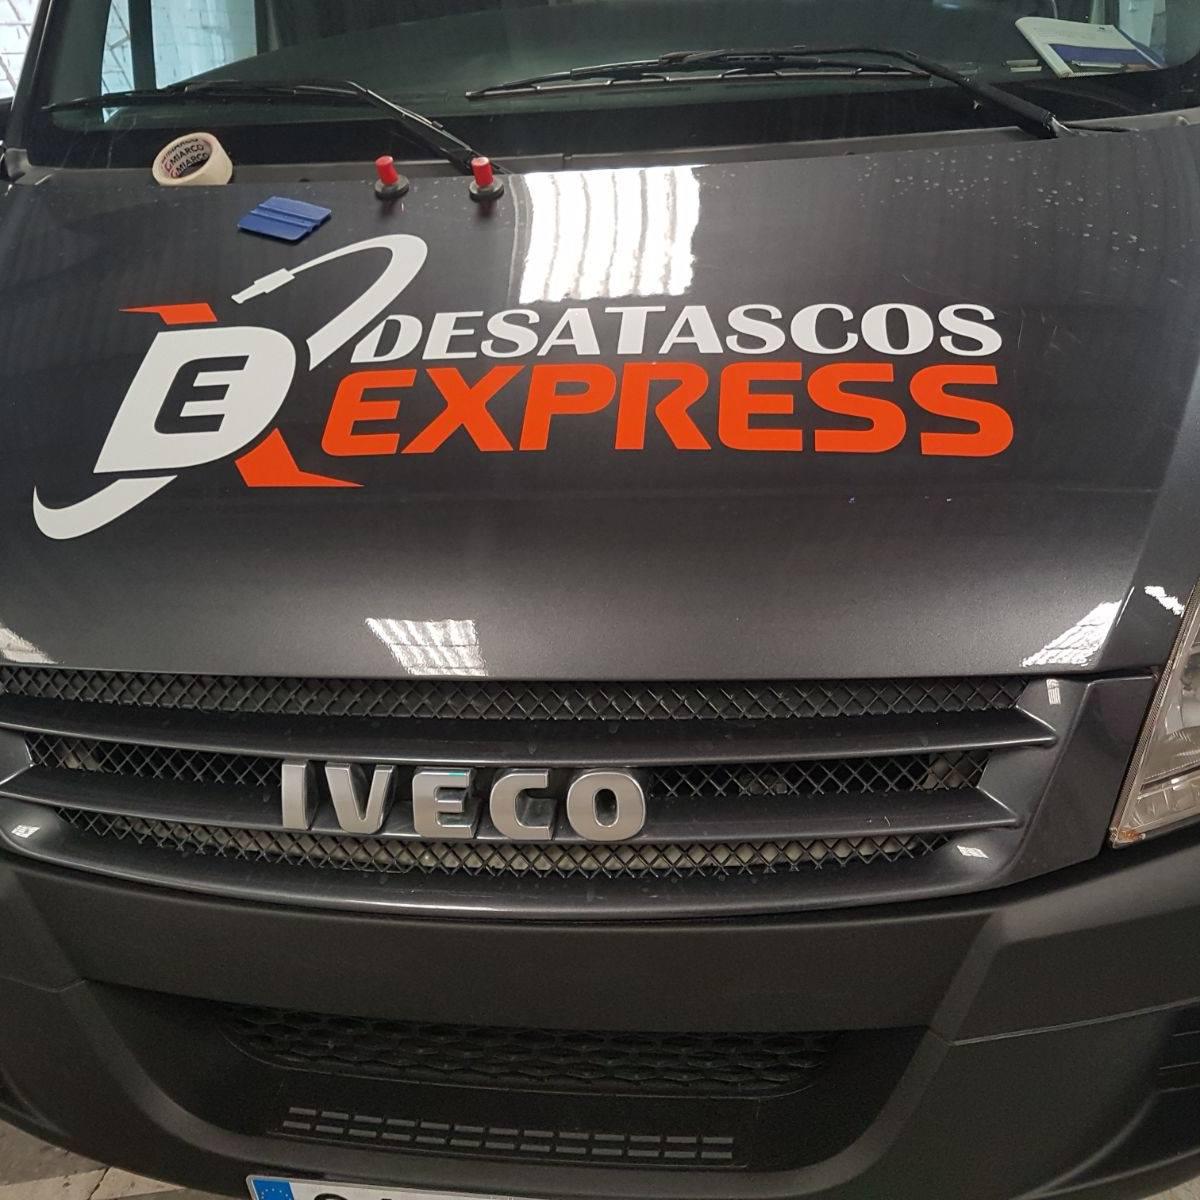 Images Desatascos Express Huelva